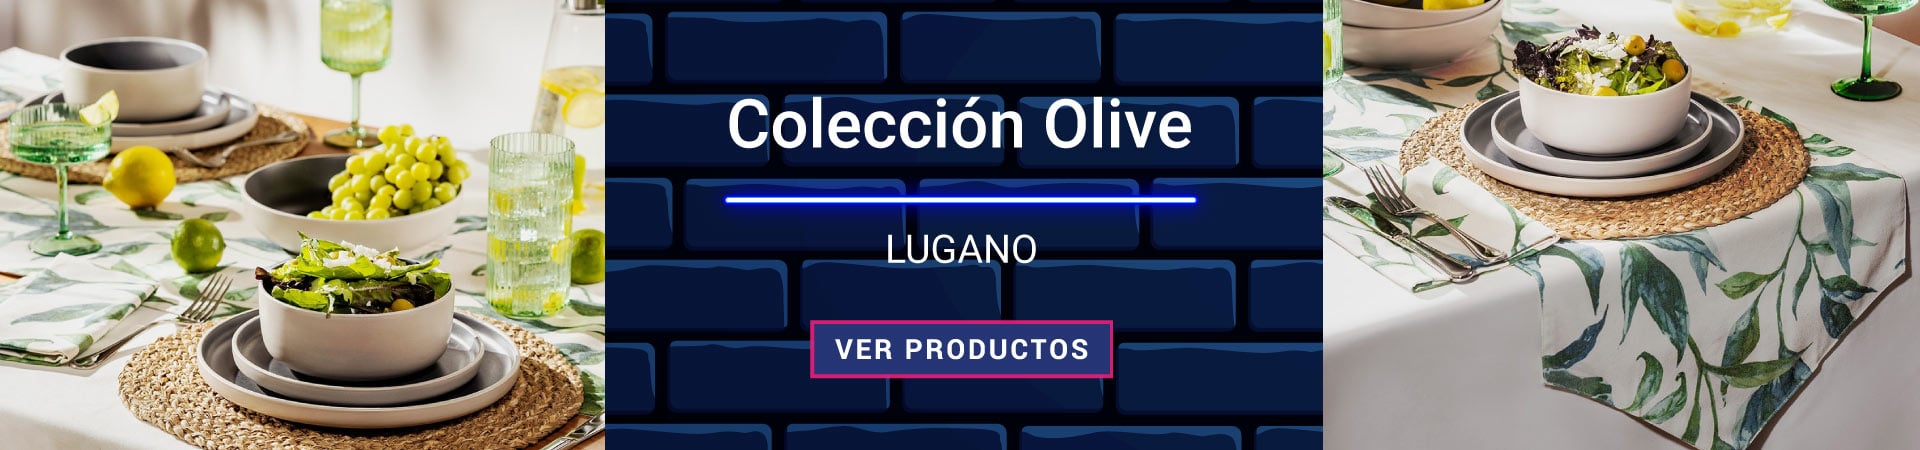 Colección Olive